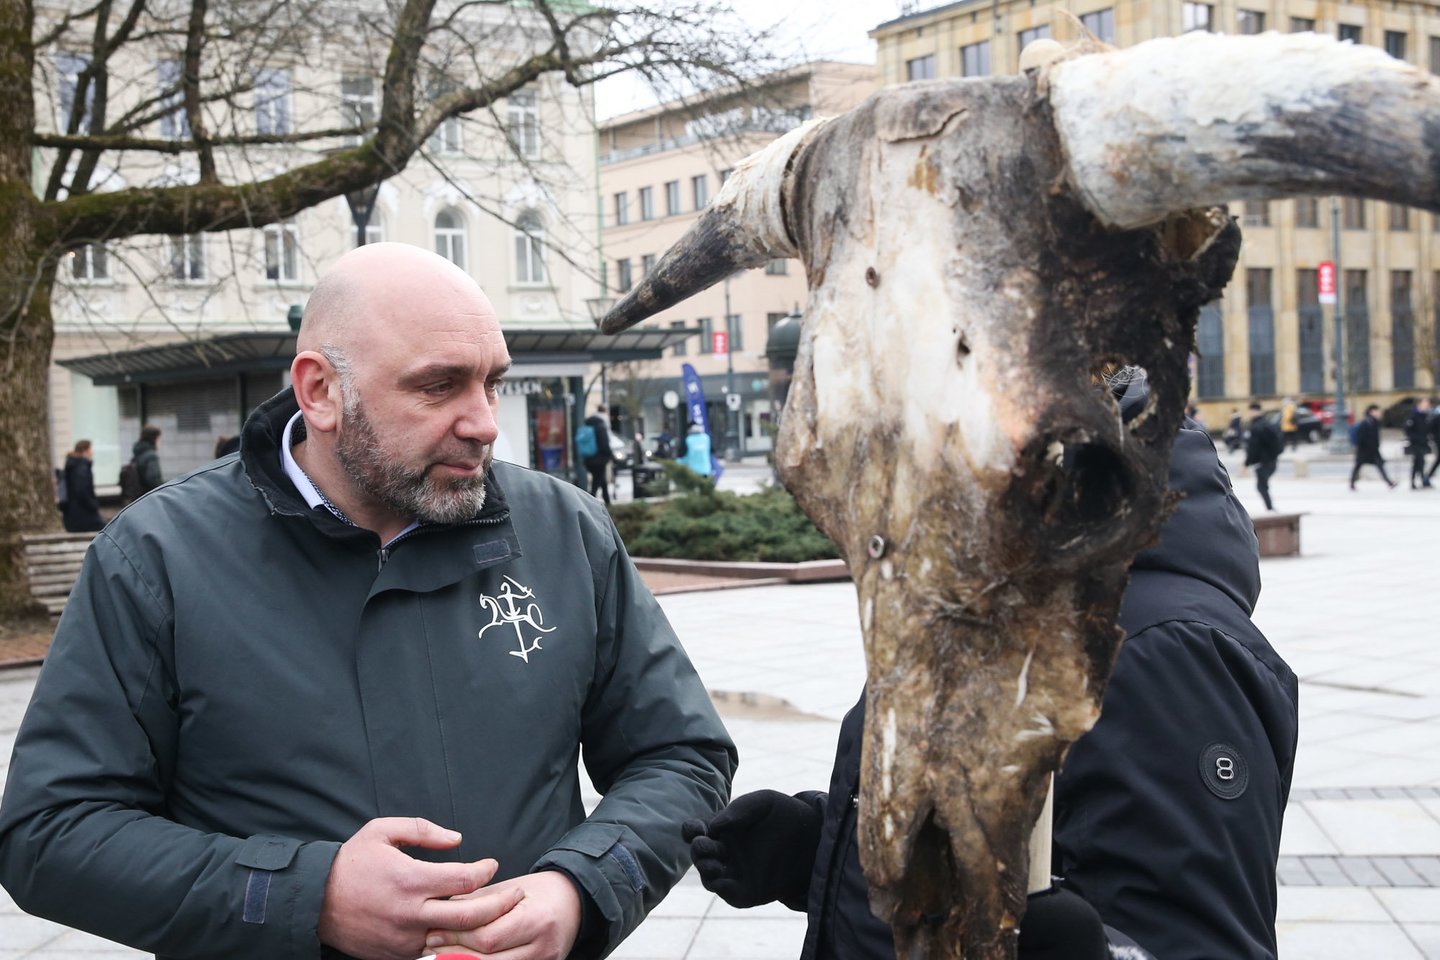  Ūkininkai prie Vyriausybės atsivežė karvę.<br> R.Danisevičiaus nuotr.